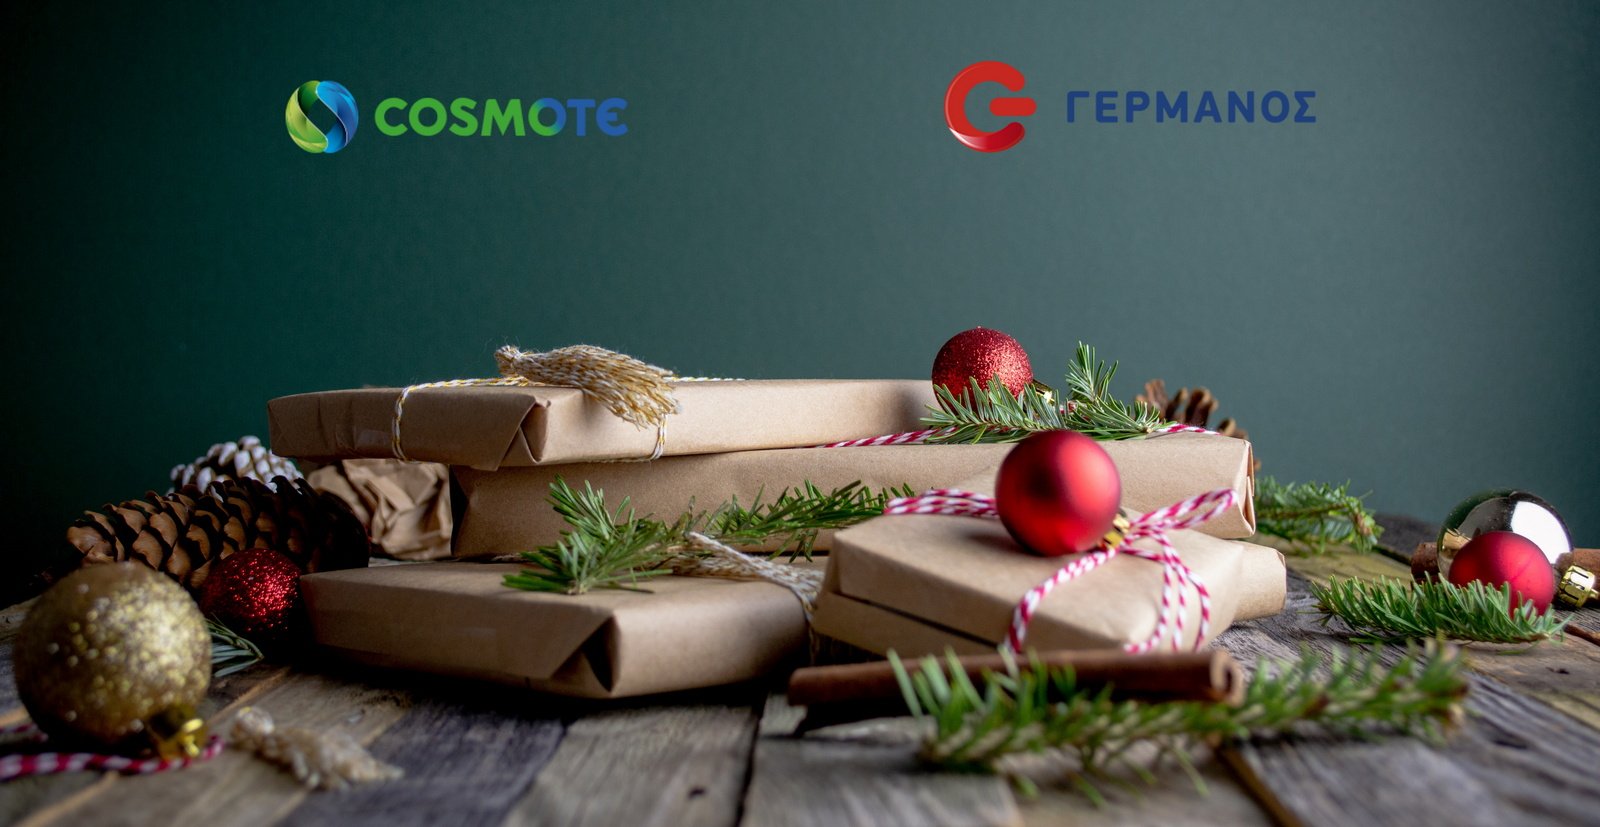 Φέτος τα Χριστούγεννα, τα γιορτινά δώρα ξεκινούν από COSMOTE και Γερμανό!